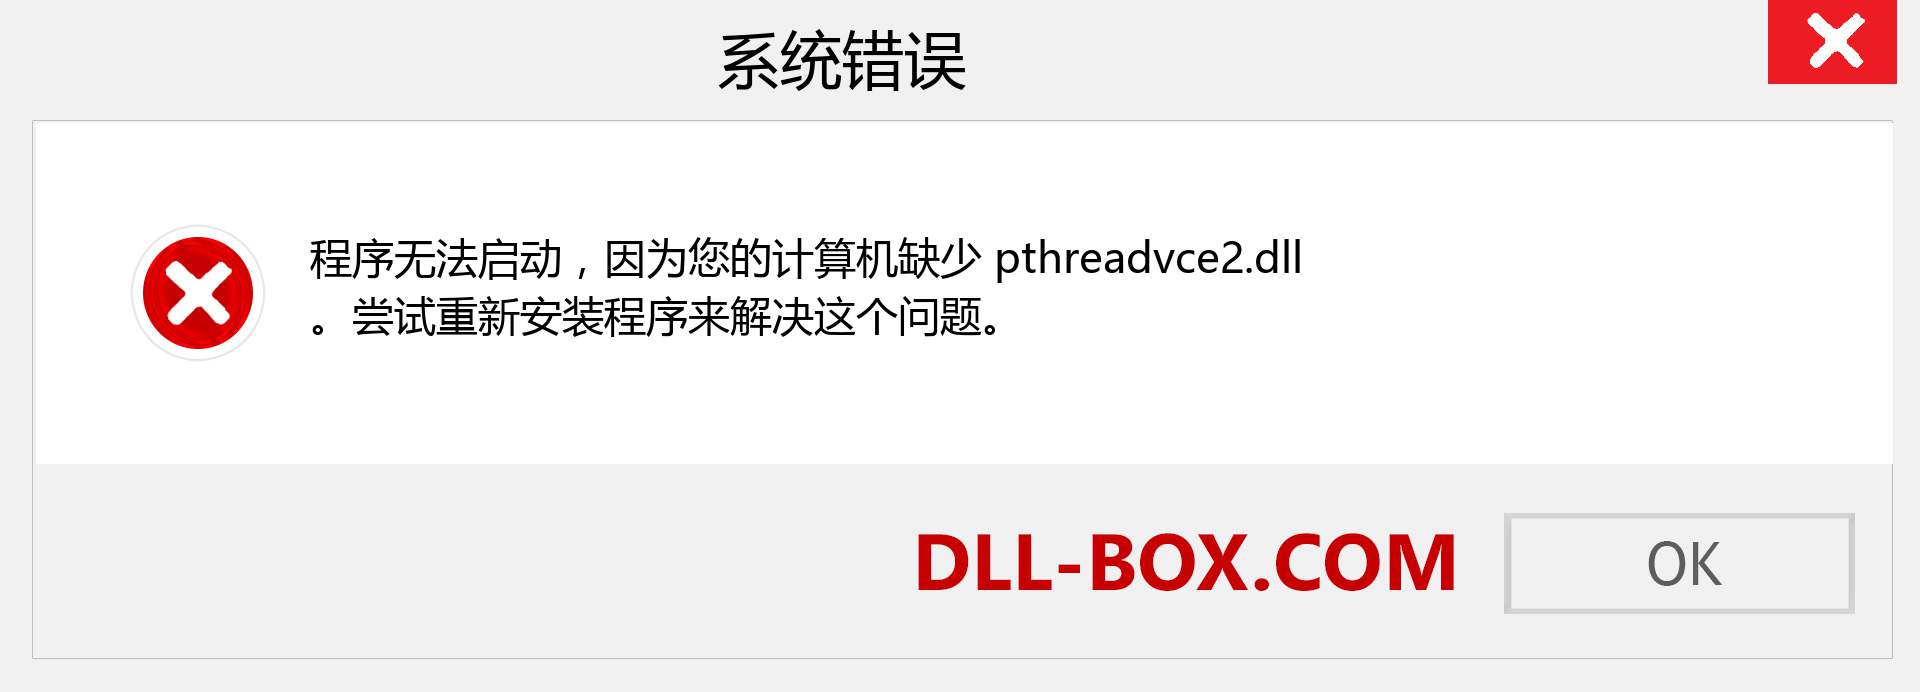 pthreadvce2.dll 文件丢失？。 适用于 Windows 7、8、10 的下载 - 修复 Windows、照片、图像上的 pthreadvce2 dll 丢失错误